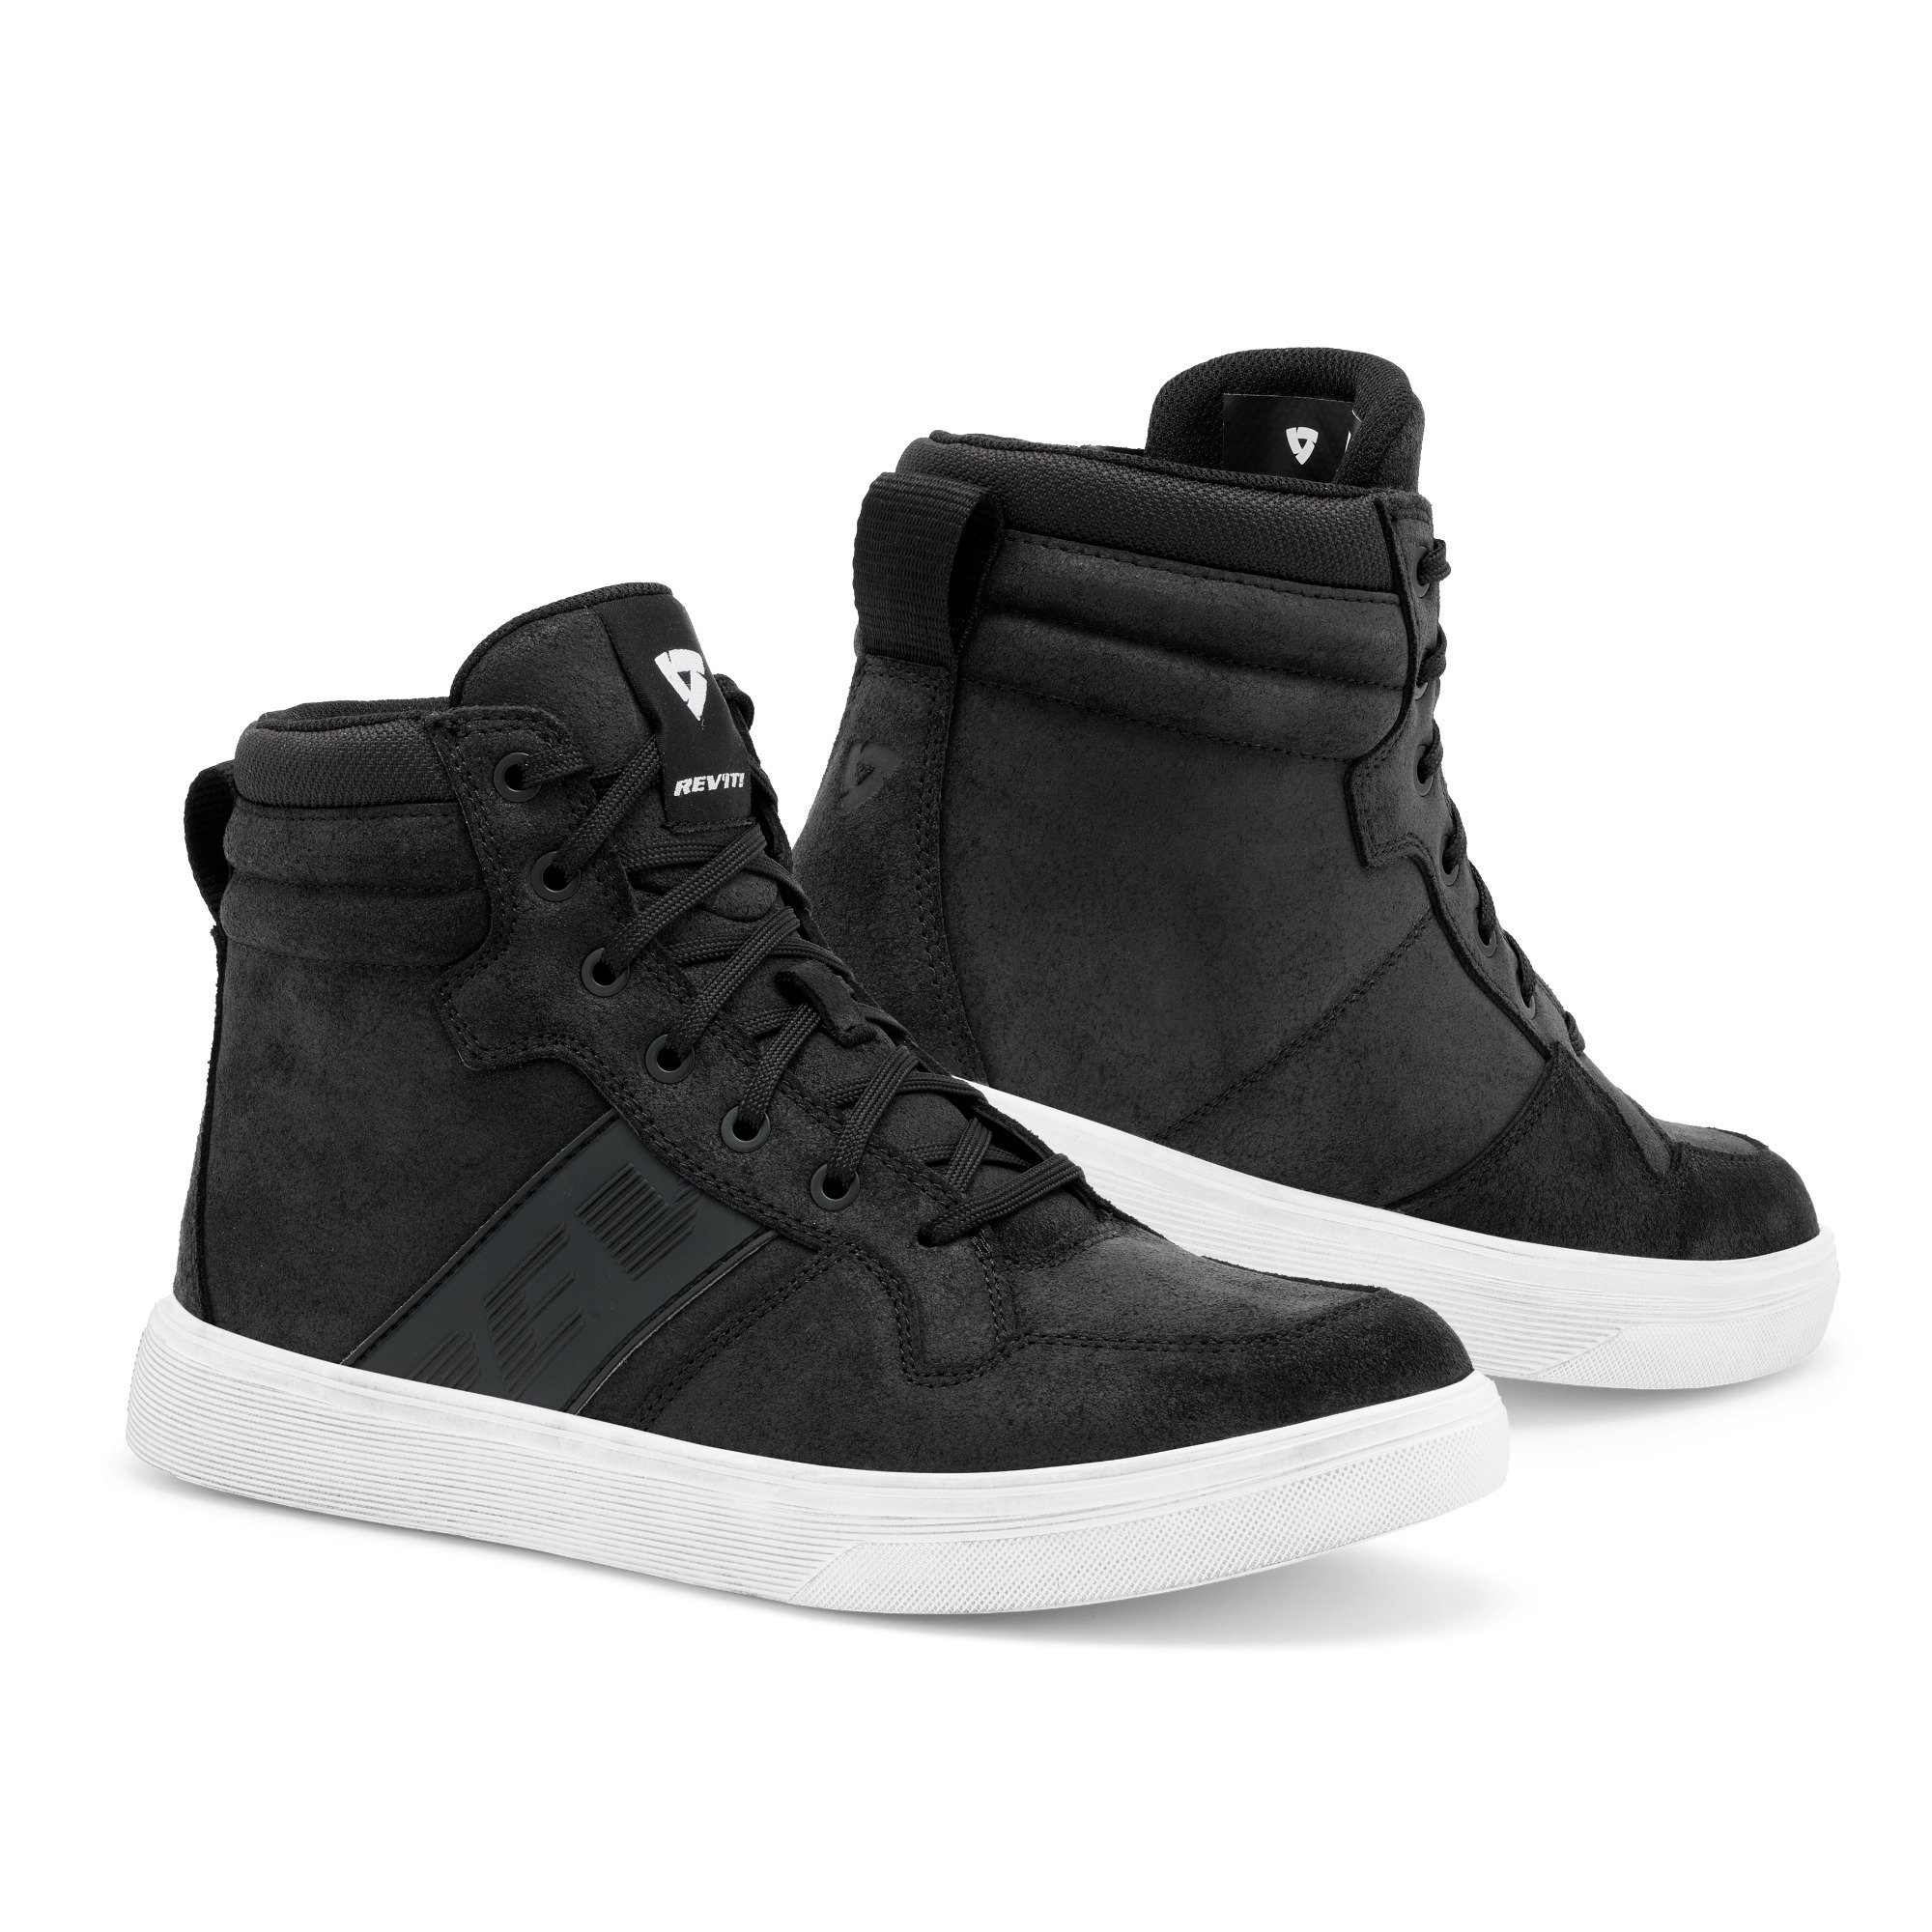 Image of REV'IT! Kick Shoes Black White Size 41 ID 8700001357494